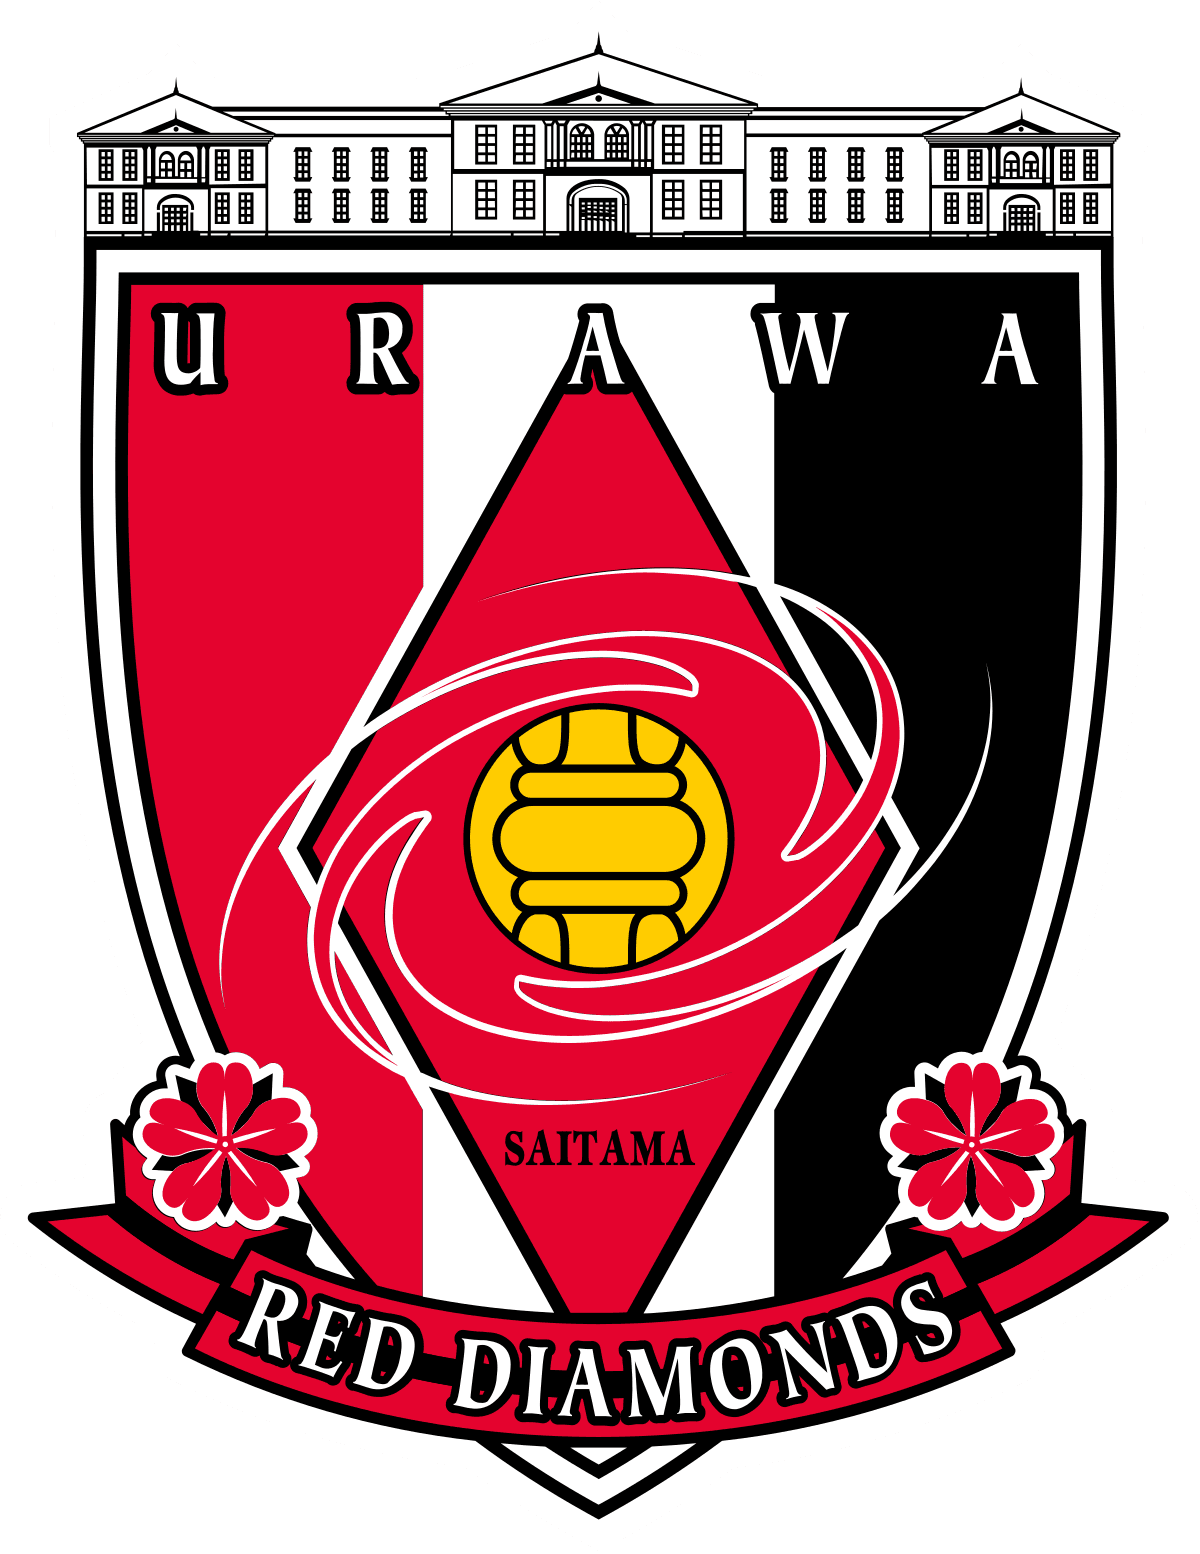 Urawa Red Diamonds (Since 2019) 